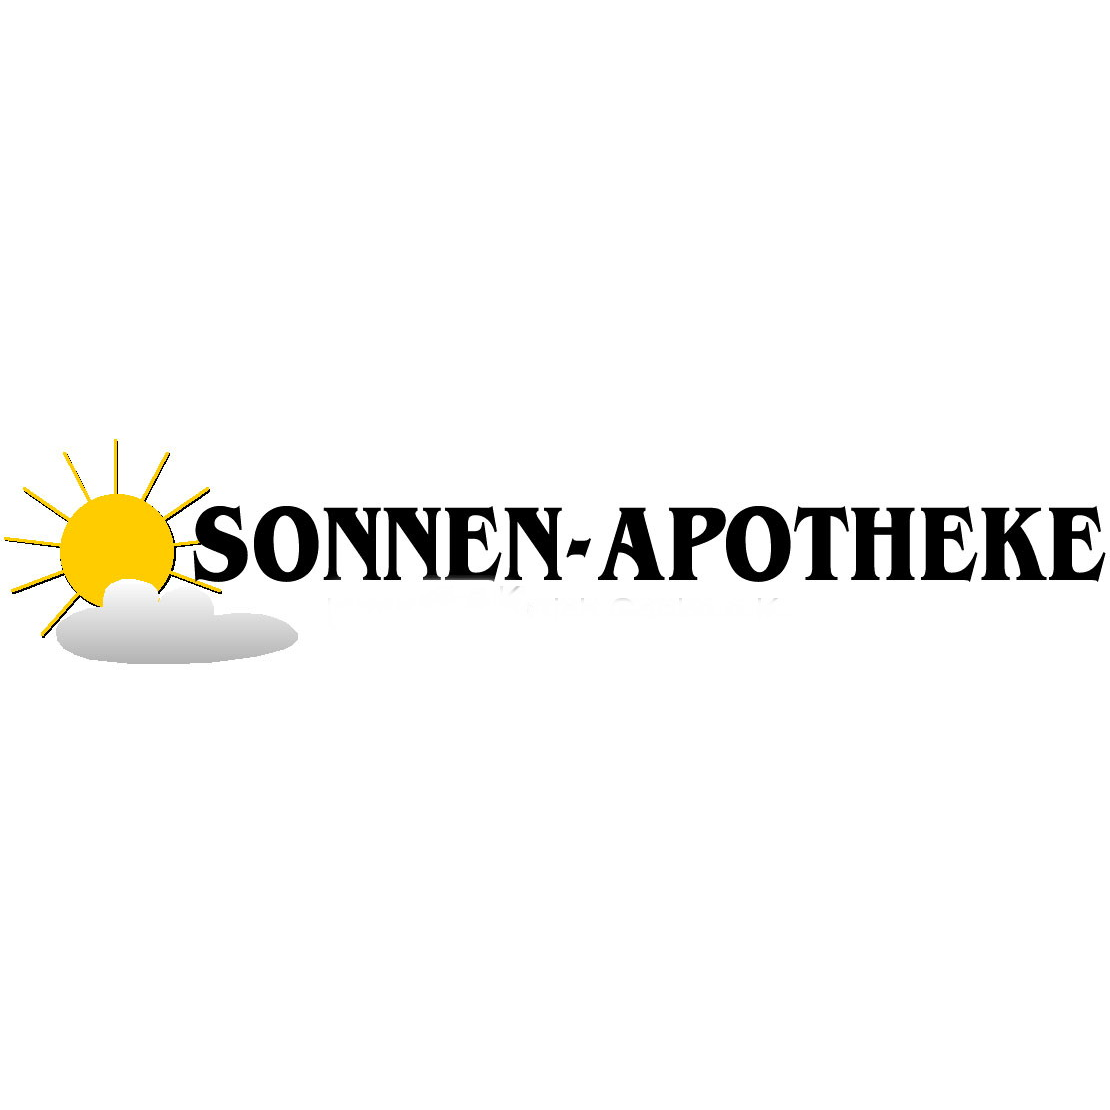 Sonnen-Apotheke in Borken in Westfalen - Logo